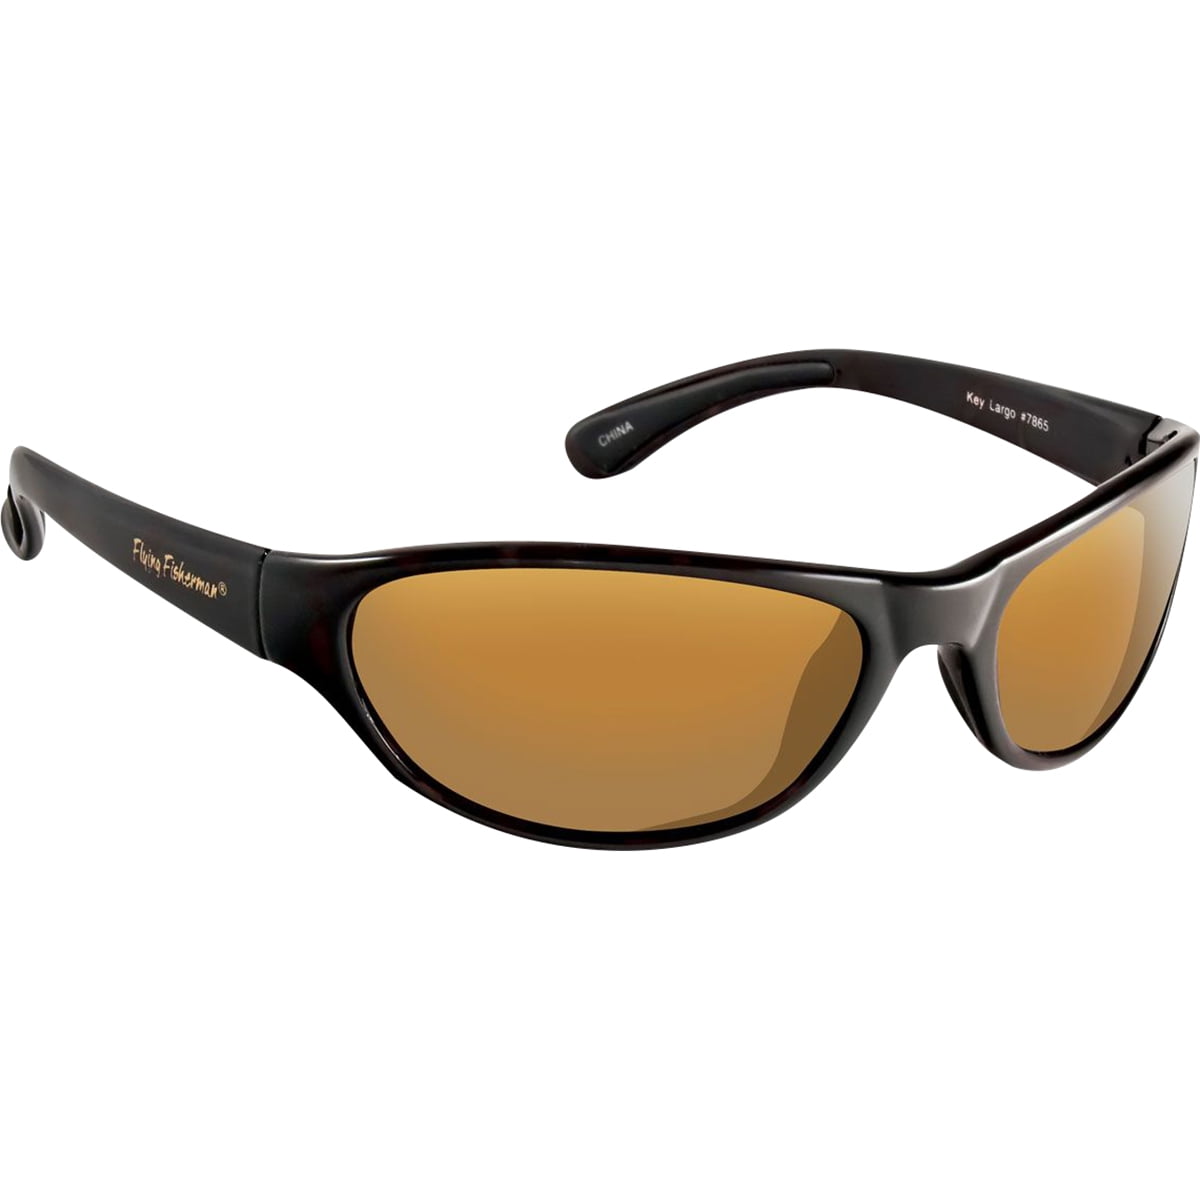 Flying Fisherman Key Largo Polarized Sunglasses - Black/Amber